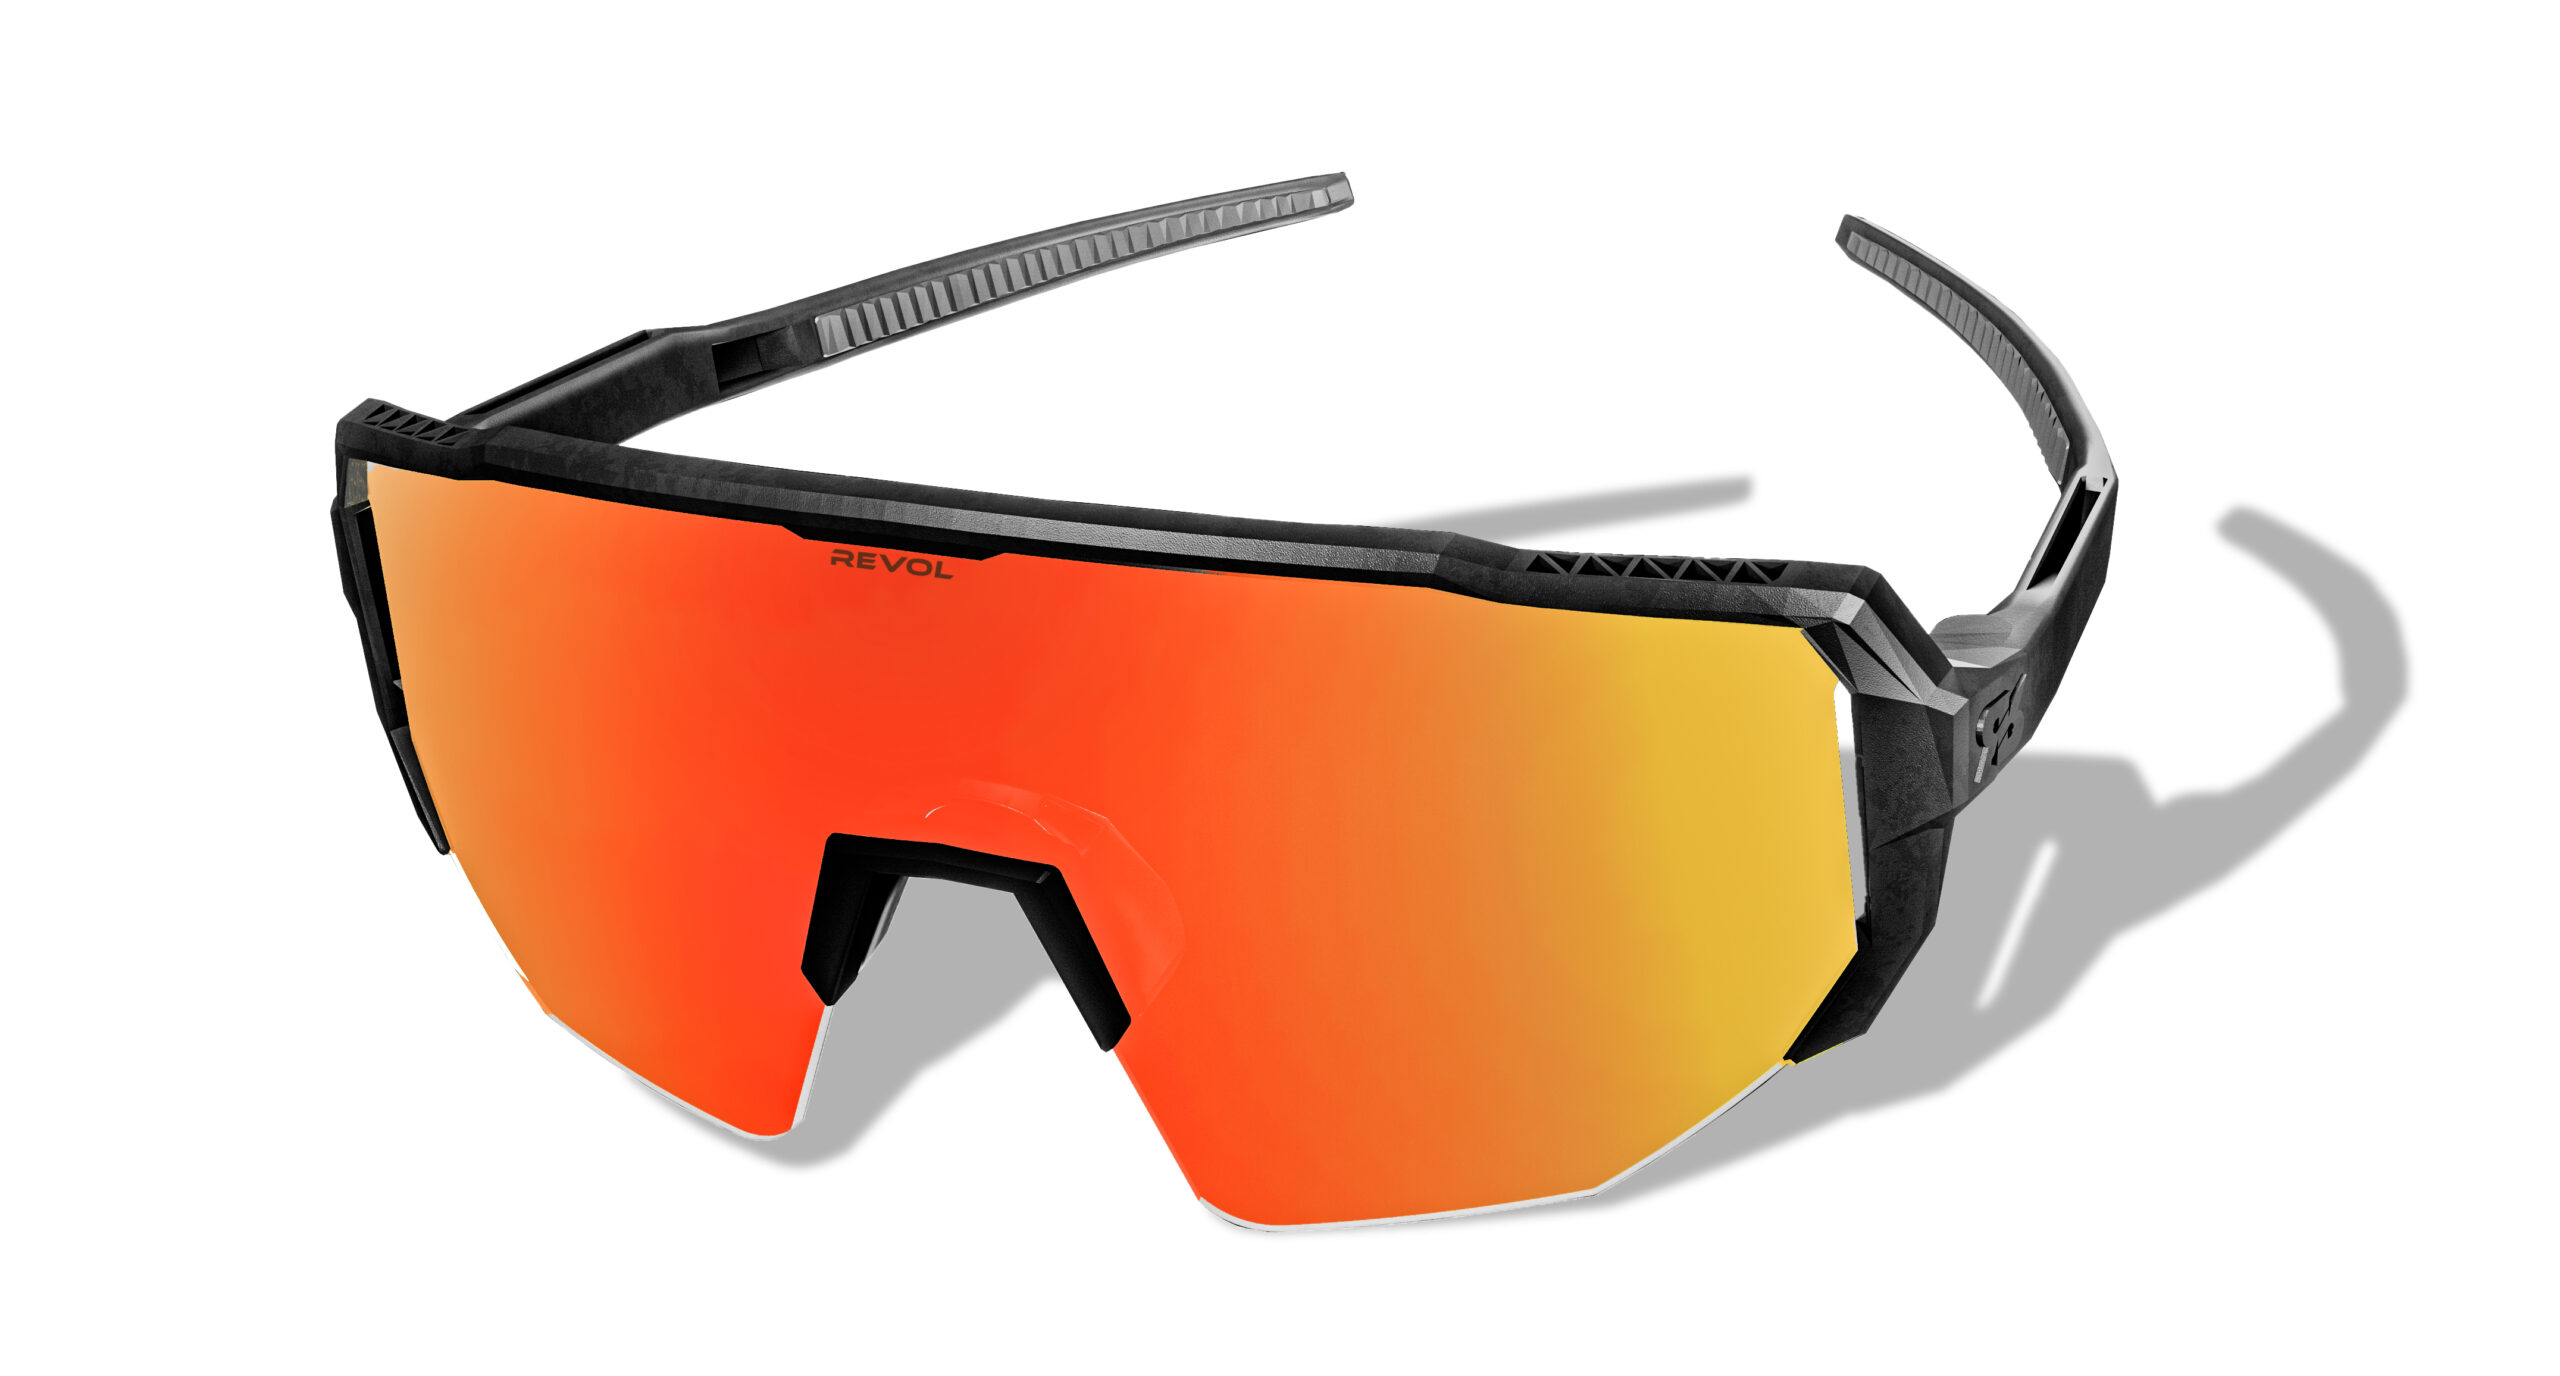 Gafas deportivas y gafas de sol que mejoran el rendimiento